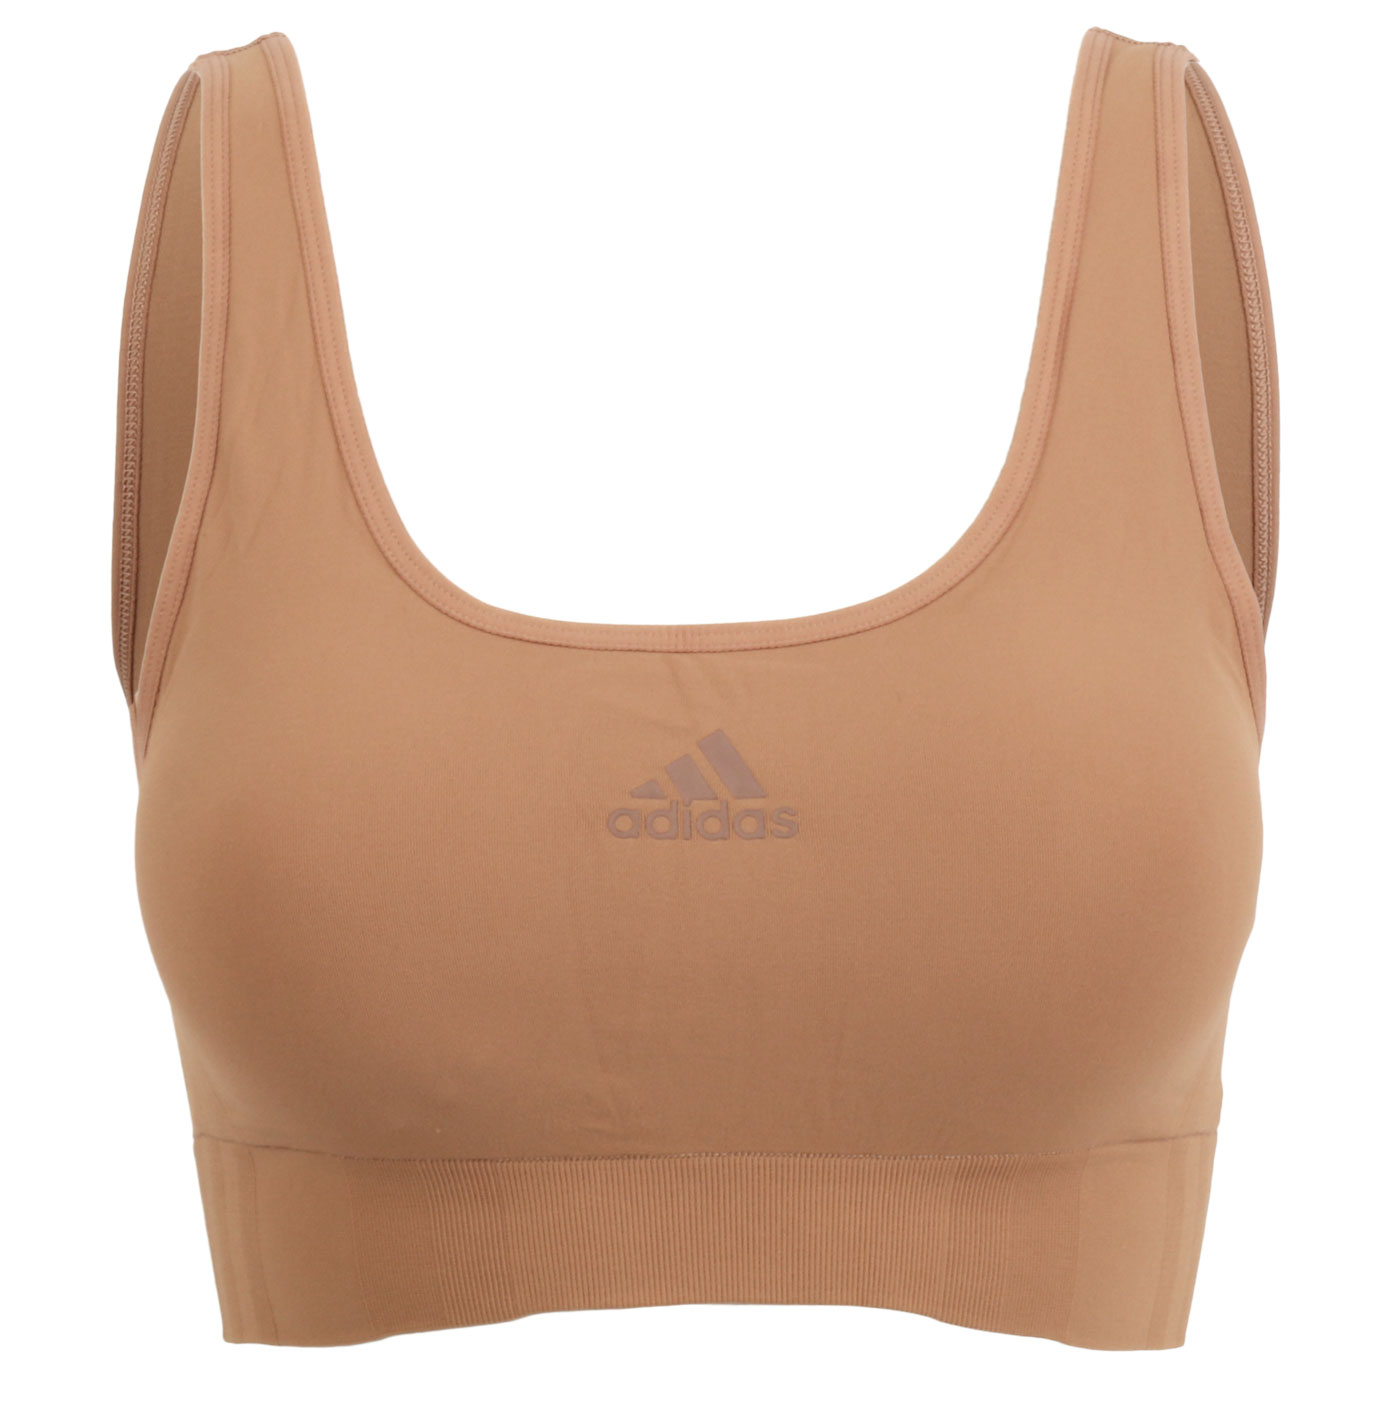 Produktbild von adidas Sports Underwear Seamless Scoop Lounge BH Damen - 301-toasted almond